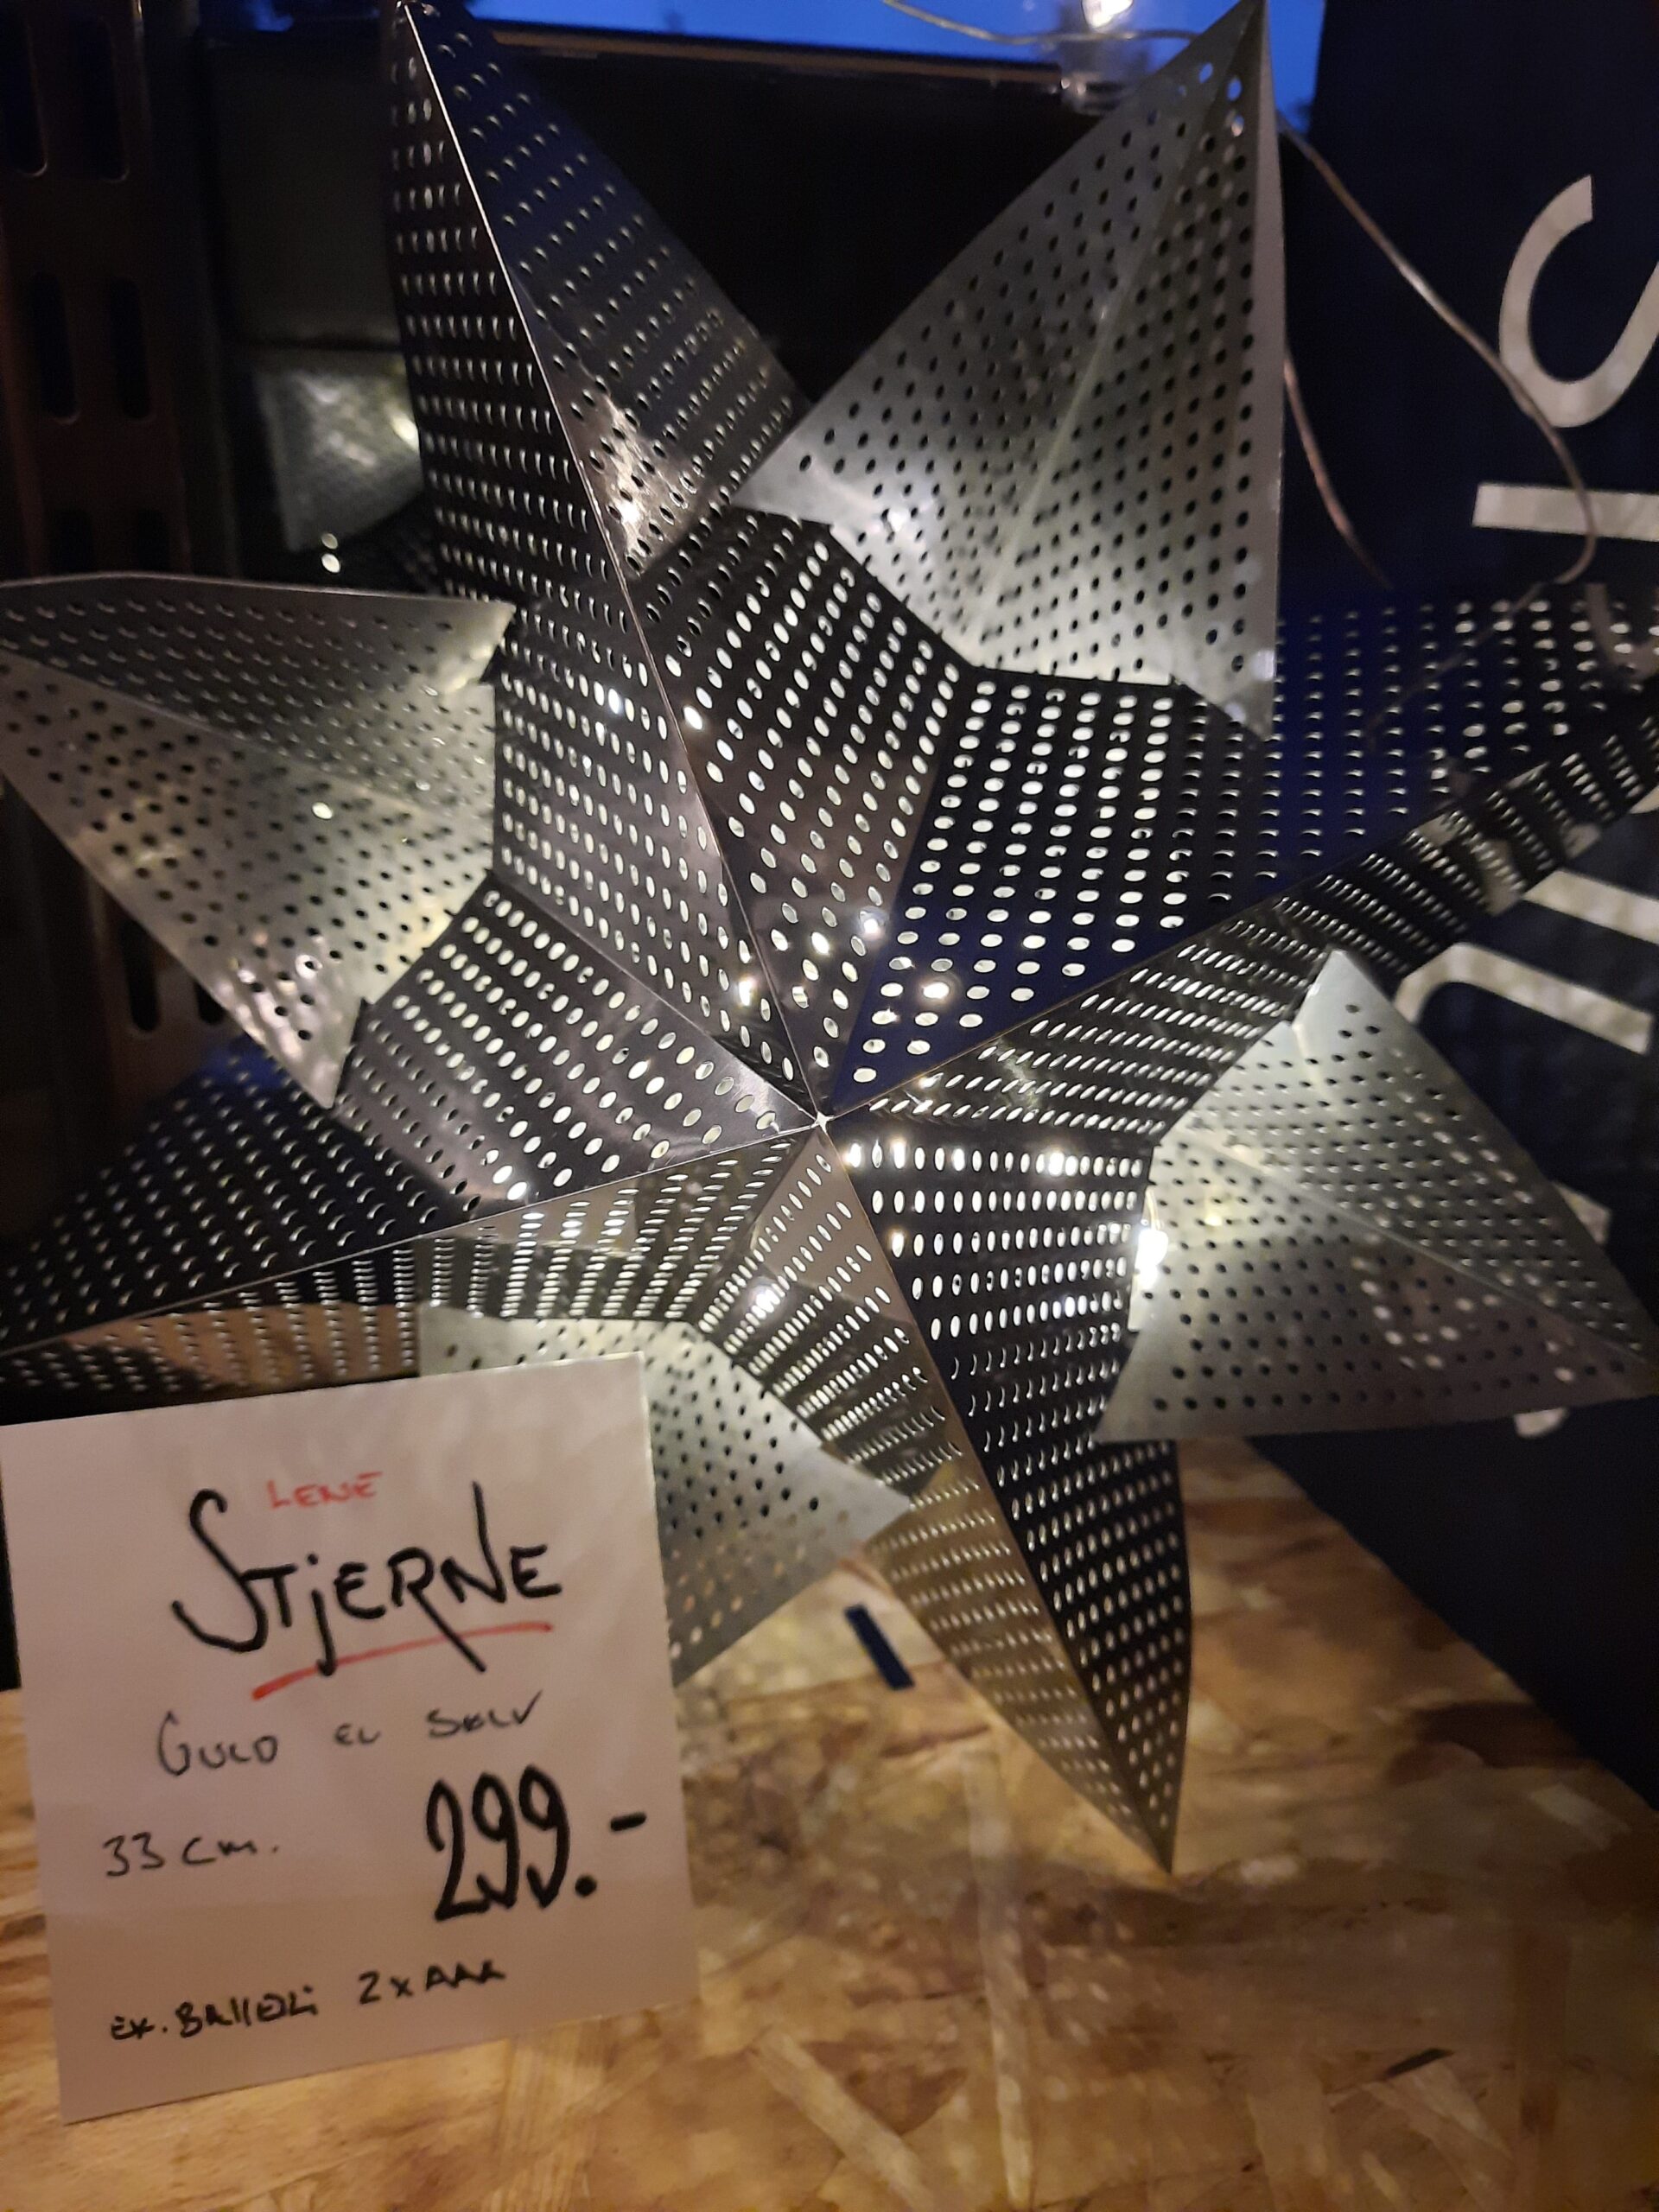 Venture Lege med Følelse Lene Stjerne 33cm sølv - Kongelundgaard